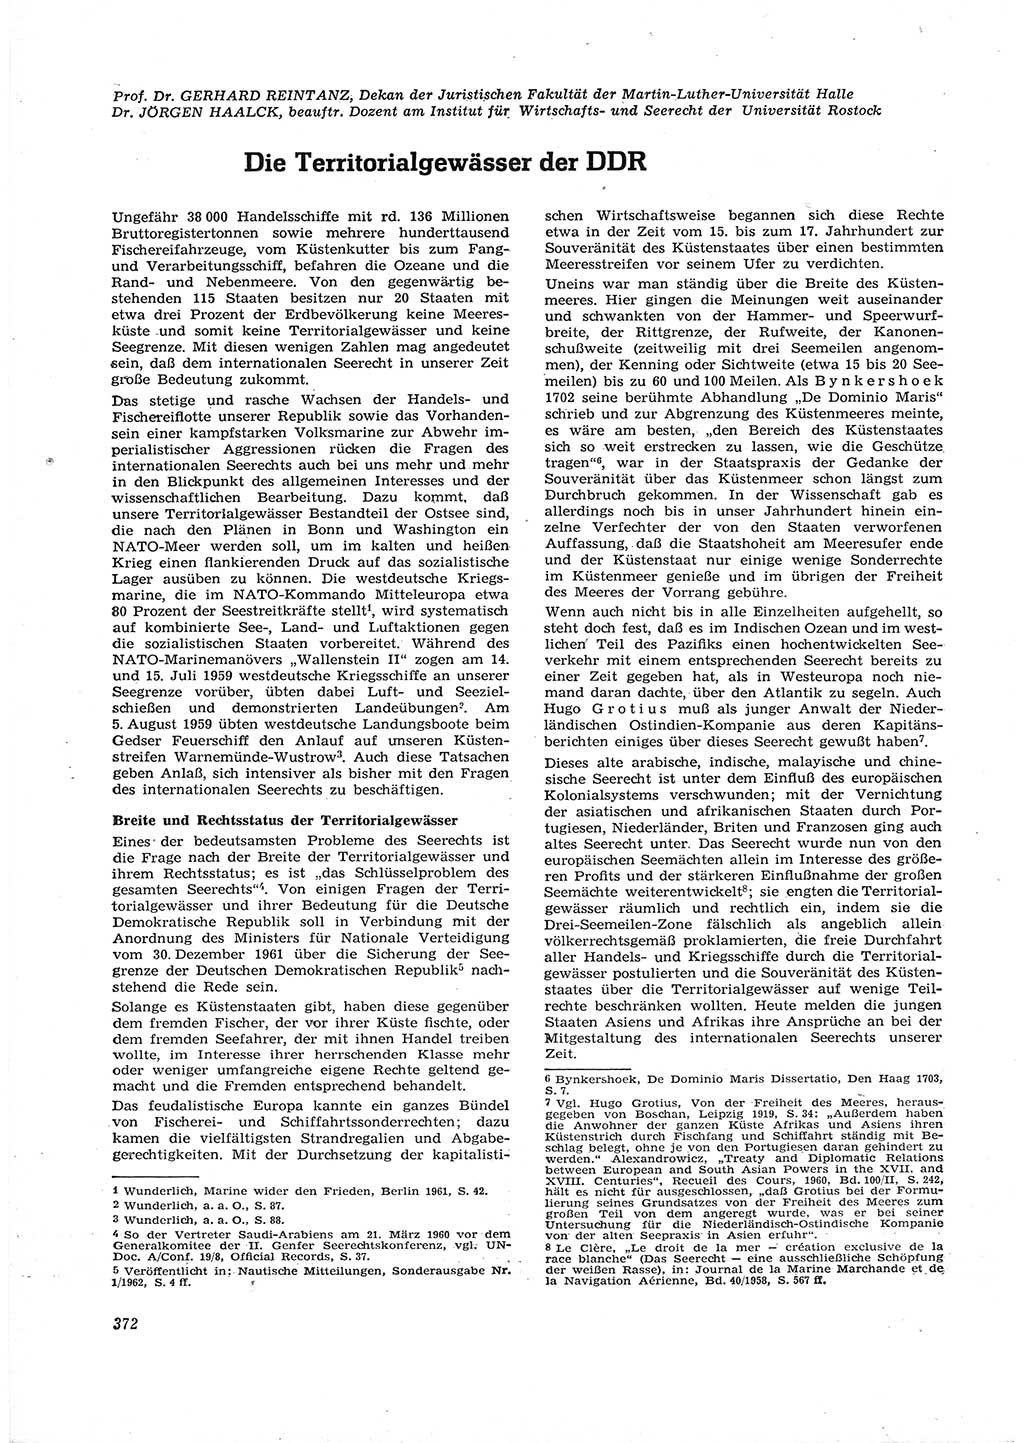 Neue Justiz (NJ), Zeitschrift für Recht und Rechtswissenschaft [Deutsche Demokratische Republik (DDR)], 16. Jahrgang 1962, Seite 372 (NJ DDR 1962, S. 372)